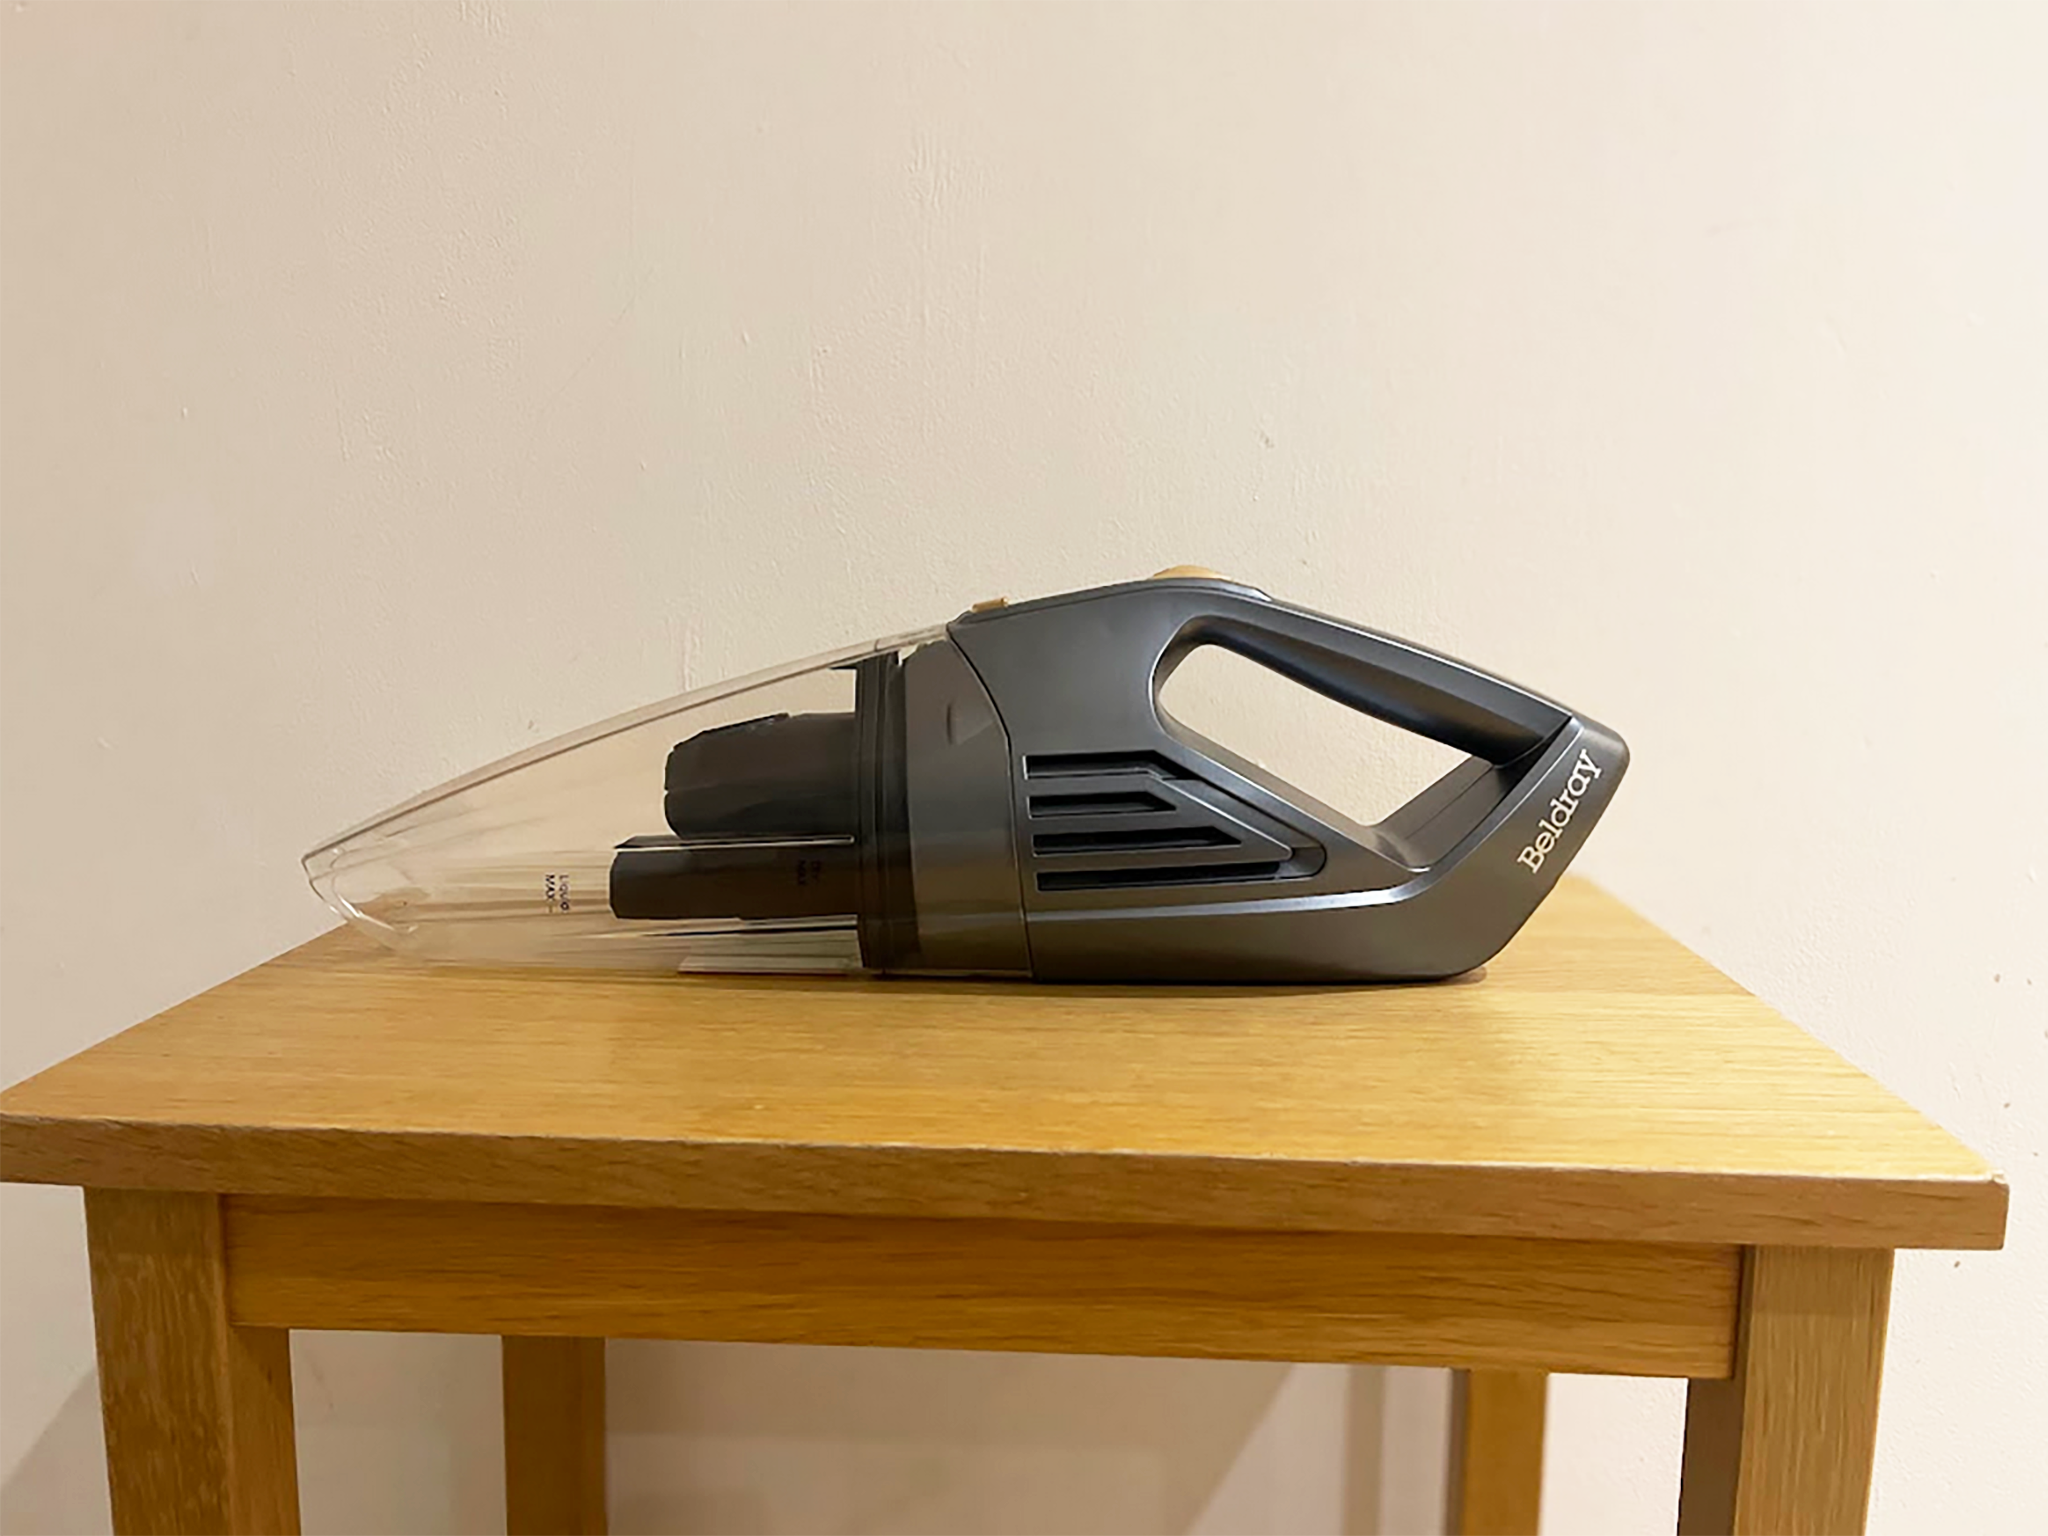 best handheld vacuums review Beldray wet and dry handheld vacuum cleaner